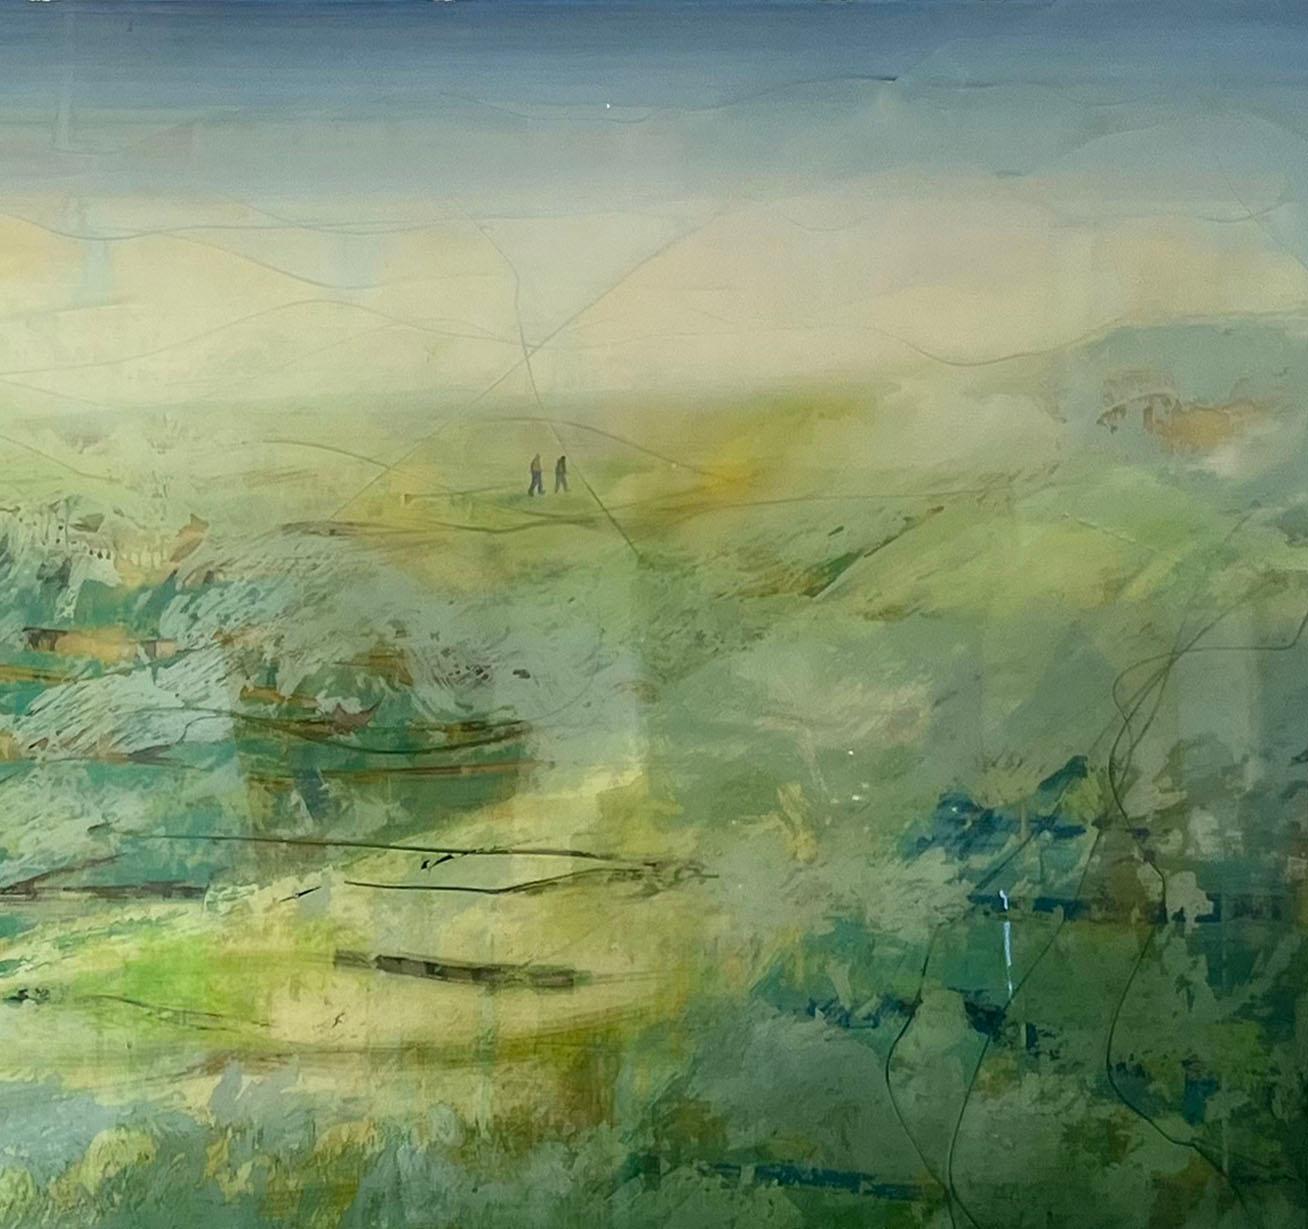 Les paysages abstraits d'Arturo Mallmann rayonnent d'une brillance qui les fait ressembler à des toiles de verre, mais ce n'est pas le cas. Le processus de Mallmann comprend une approche complexe consistant à superposer couche après couche de résine